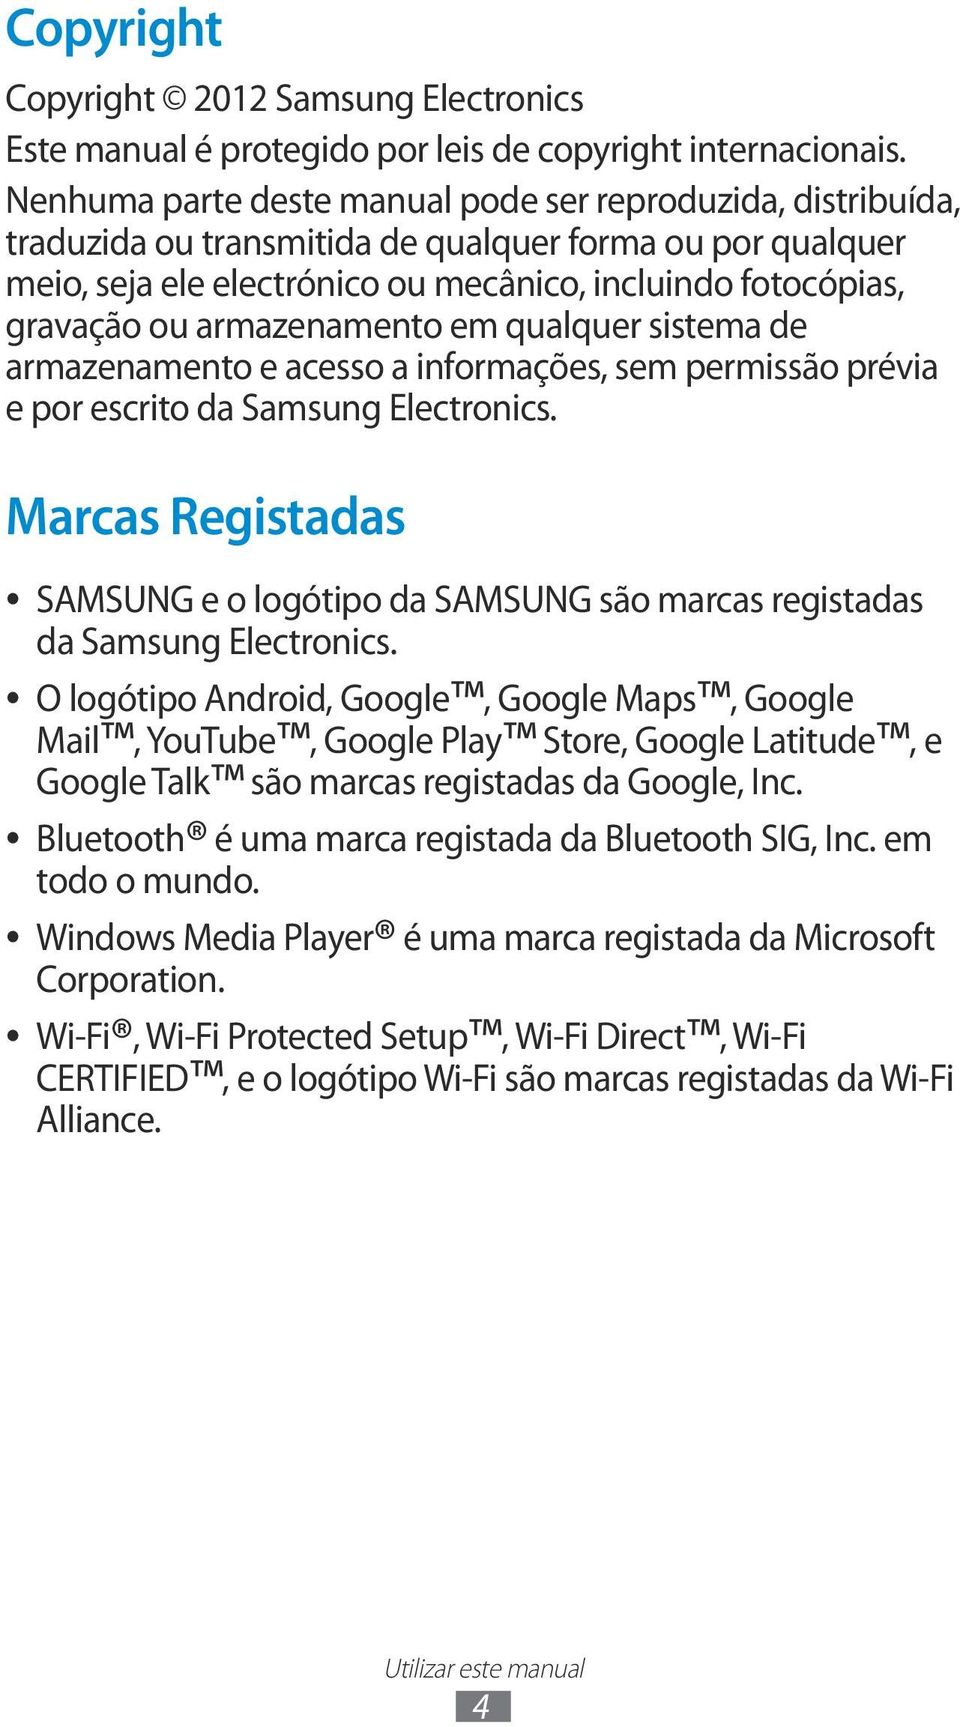 armazenamento em qualquer sistema de armazenamento e acesso a informações, sem permissão prévia e por escrito da Samsung Electronics.